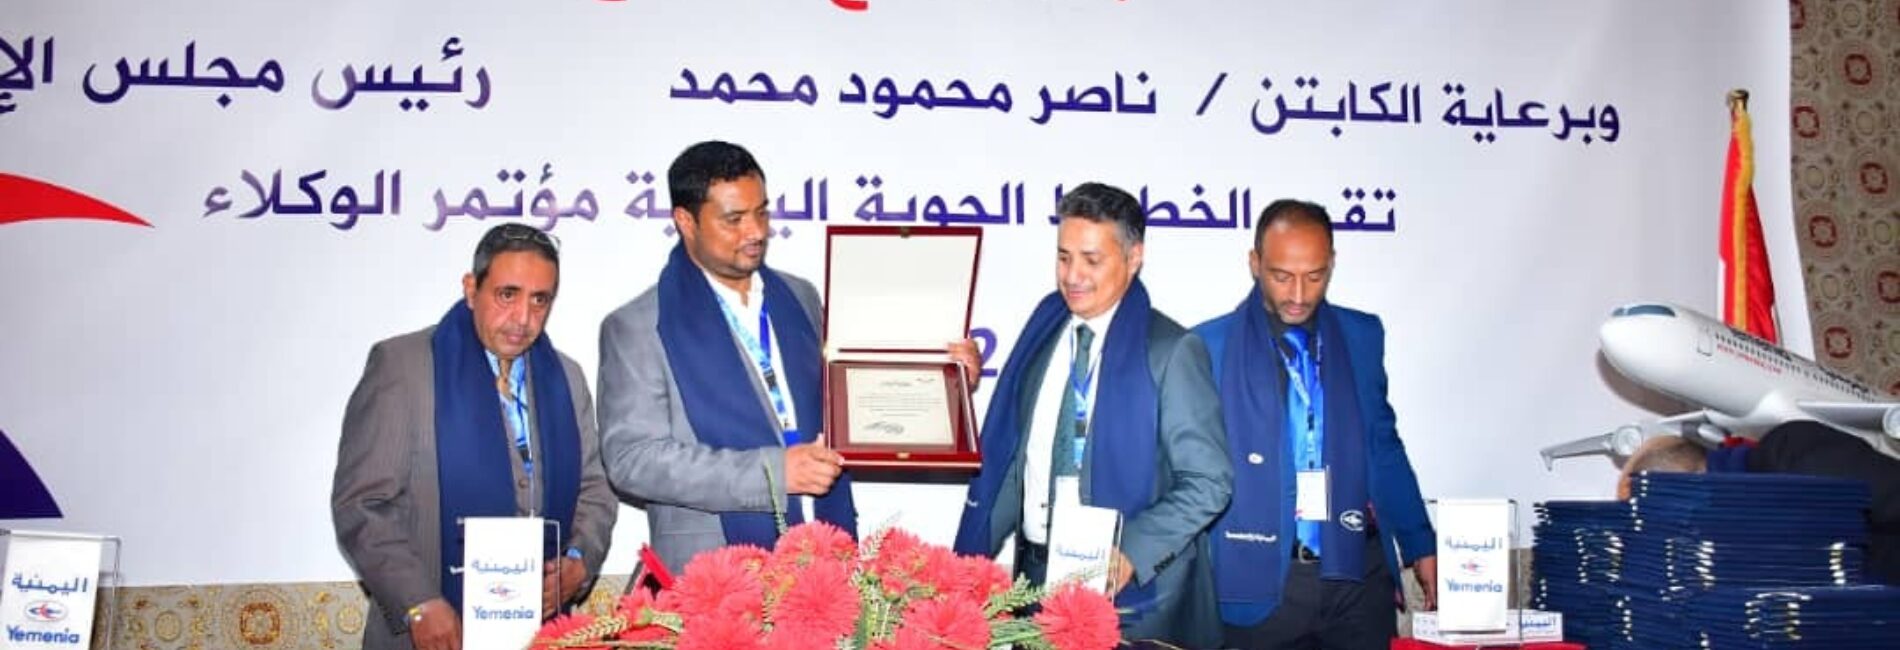 هيئة الطيران المدني بصنعاء تكرم قيادة اليمنية وإدارة منطقة صنعاء